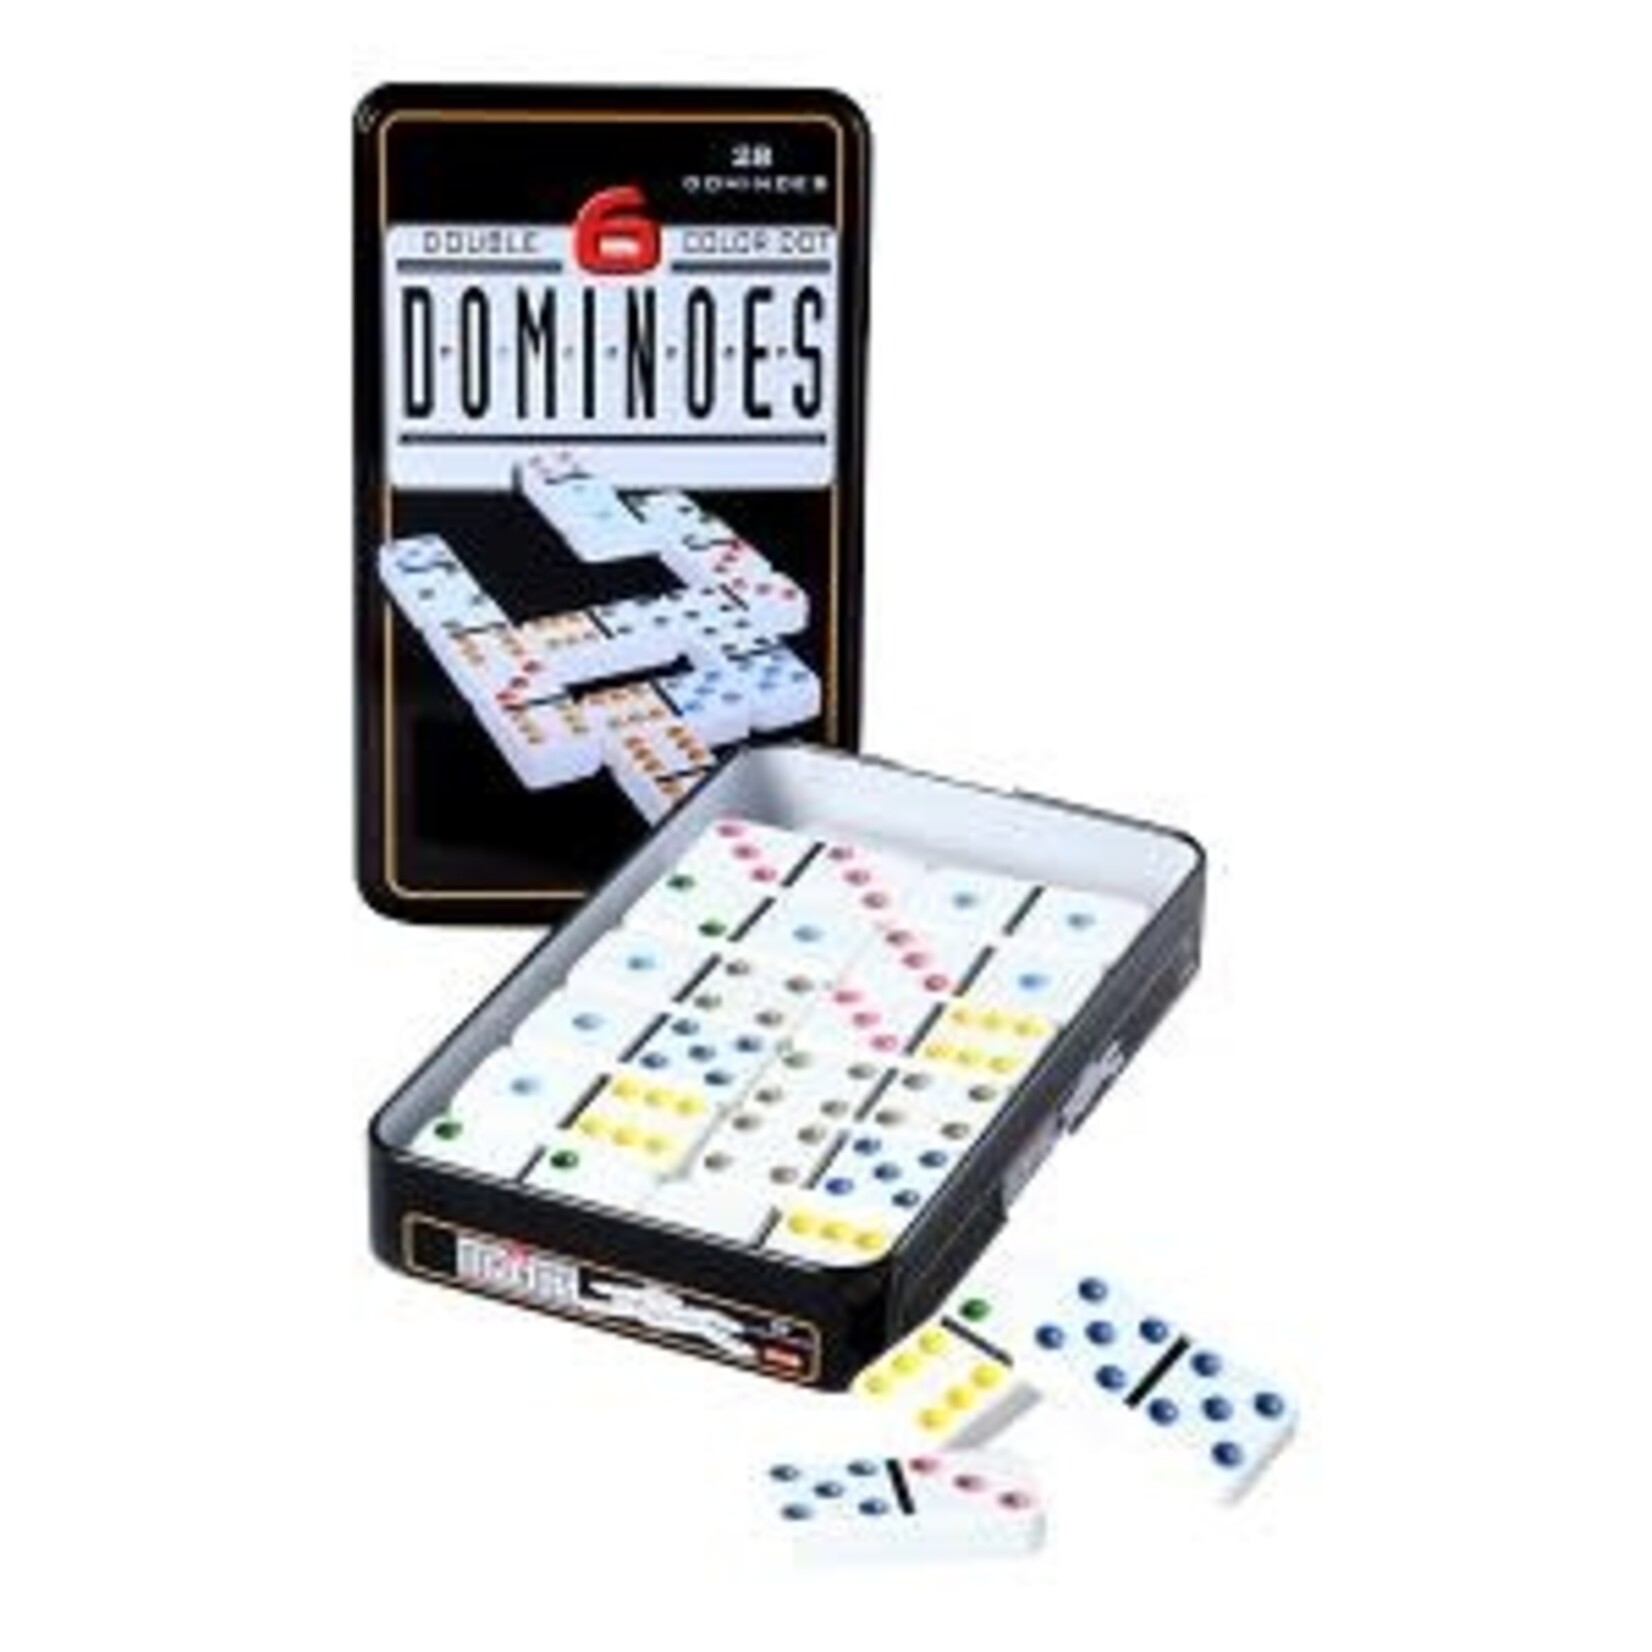 Longfield games Domino dubbel 6 in blik